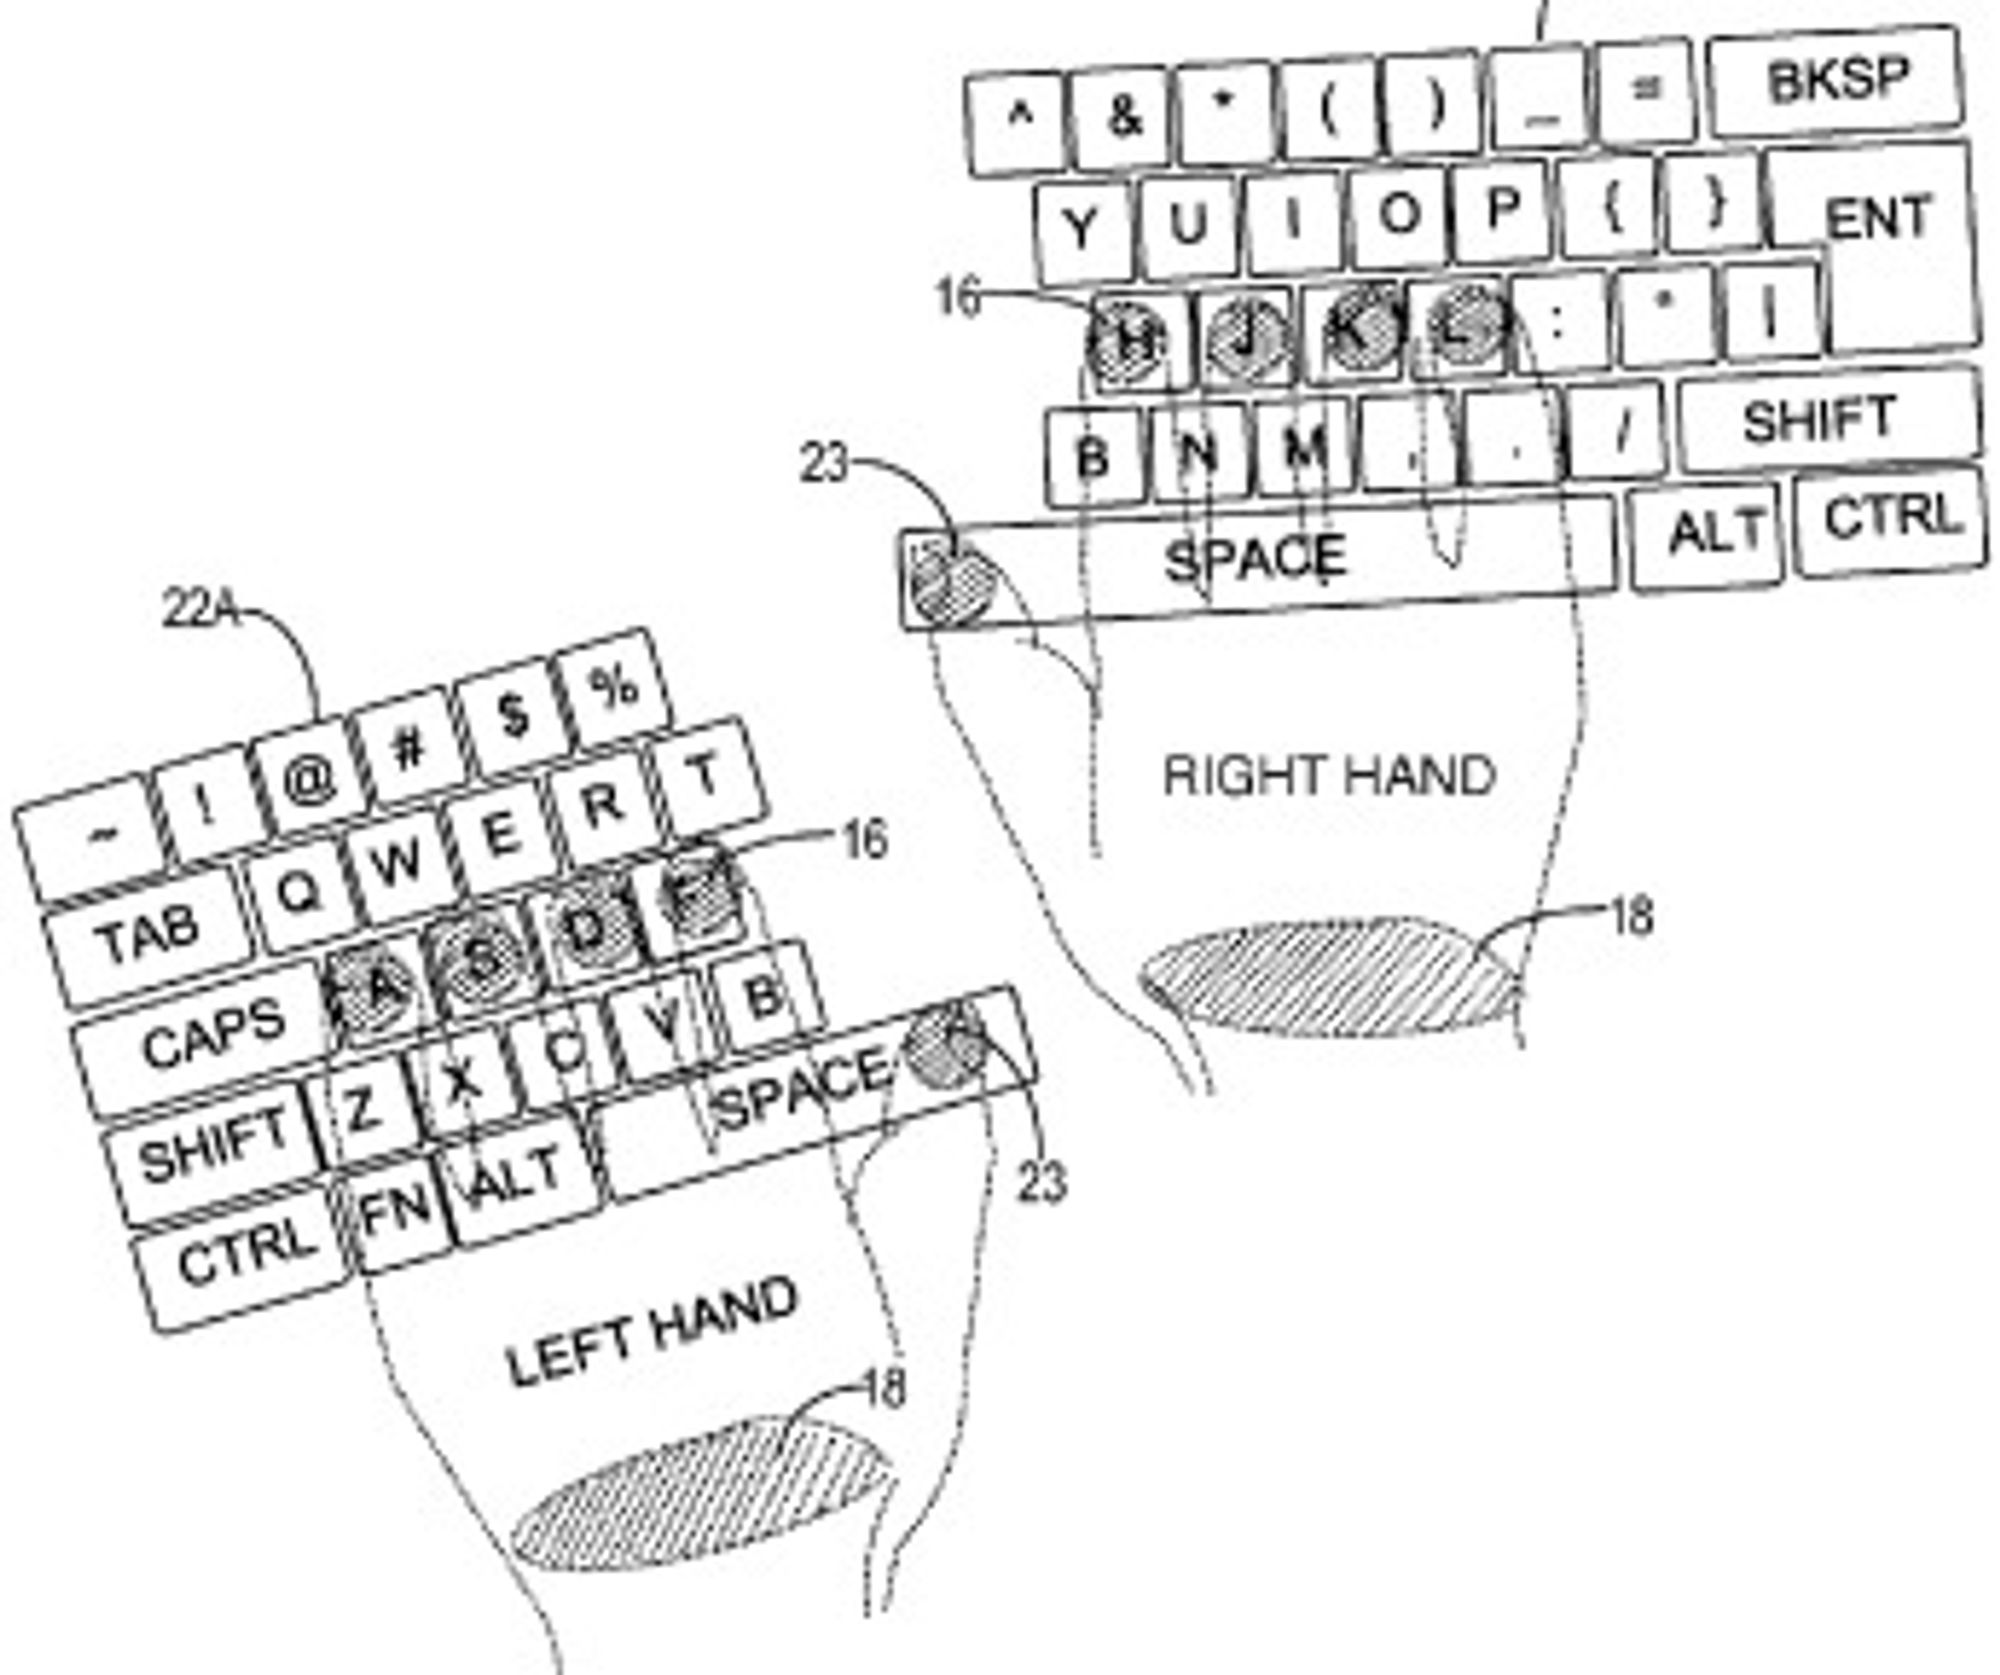 Tastaturet kan deles i to, avhengig av hvor brukeren plasserer venstre og høyre hånd. Ergonomisk sett kan dette være en fordel.